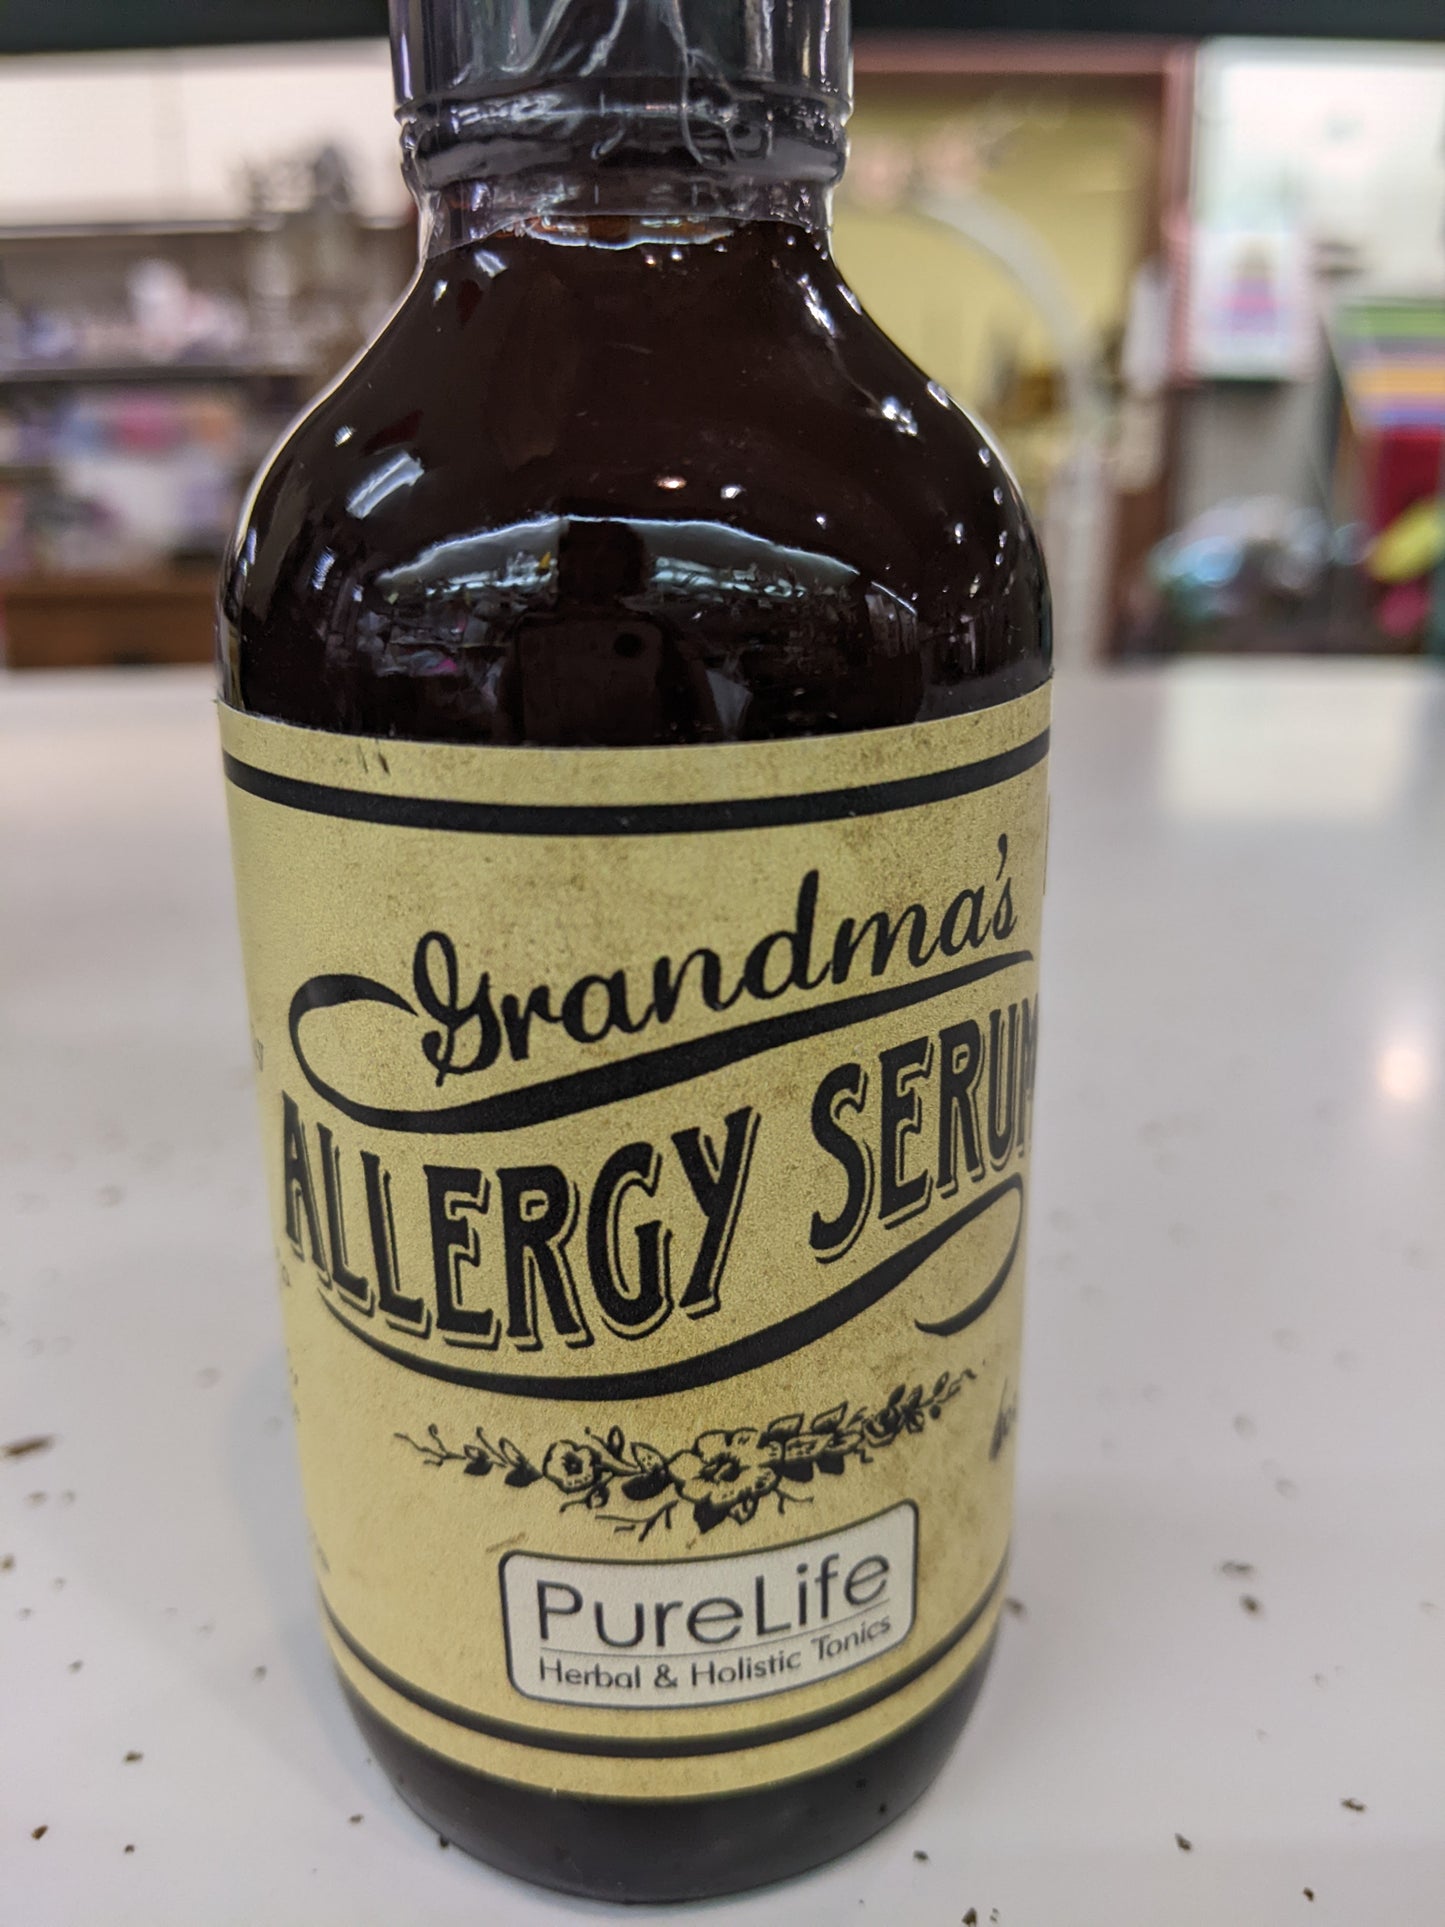 Grandma's Allergy Serum